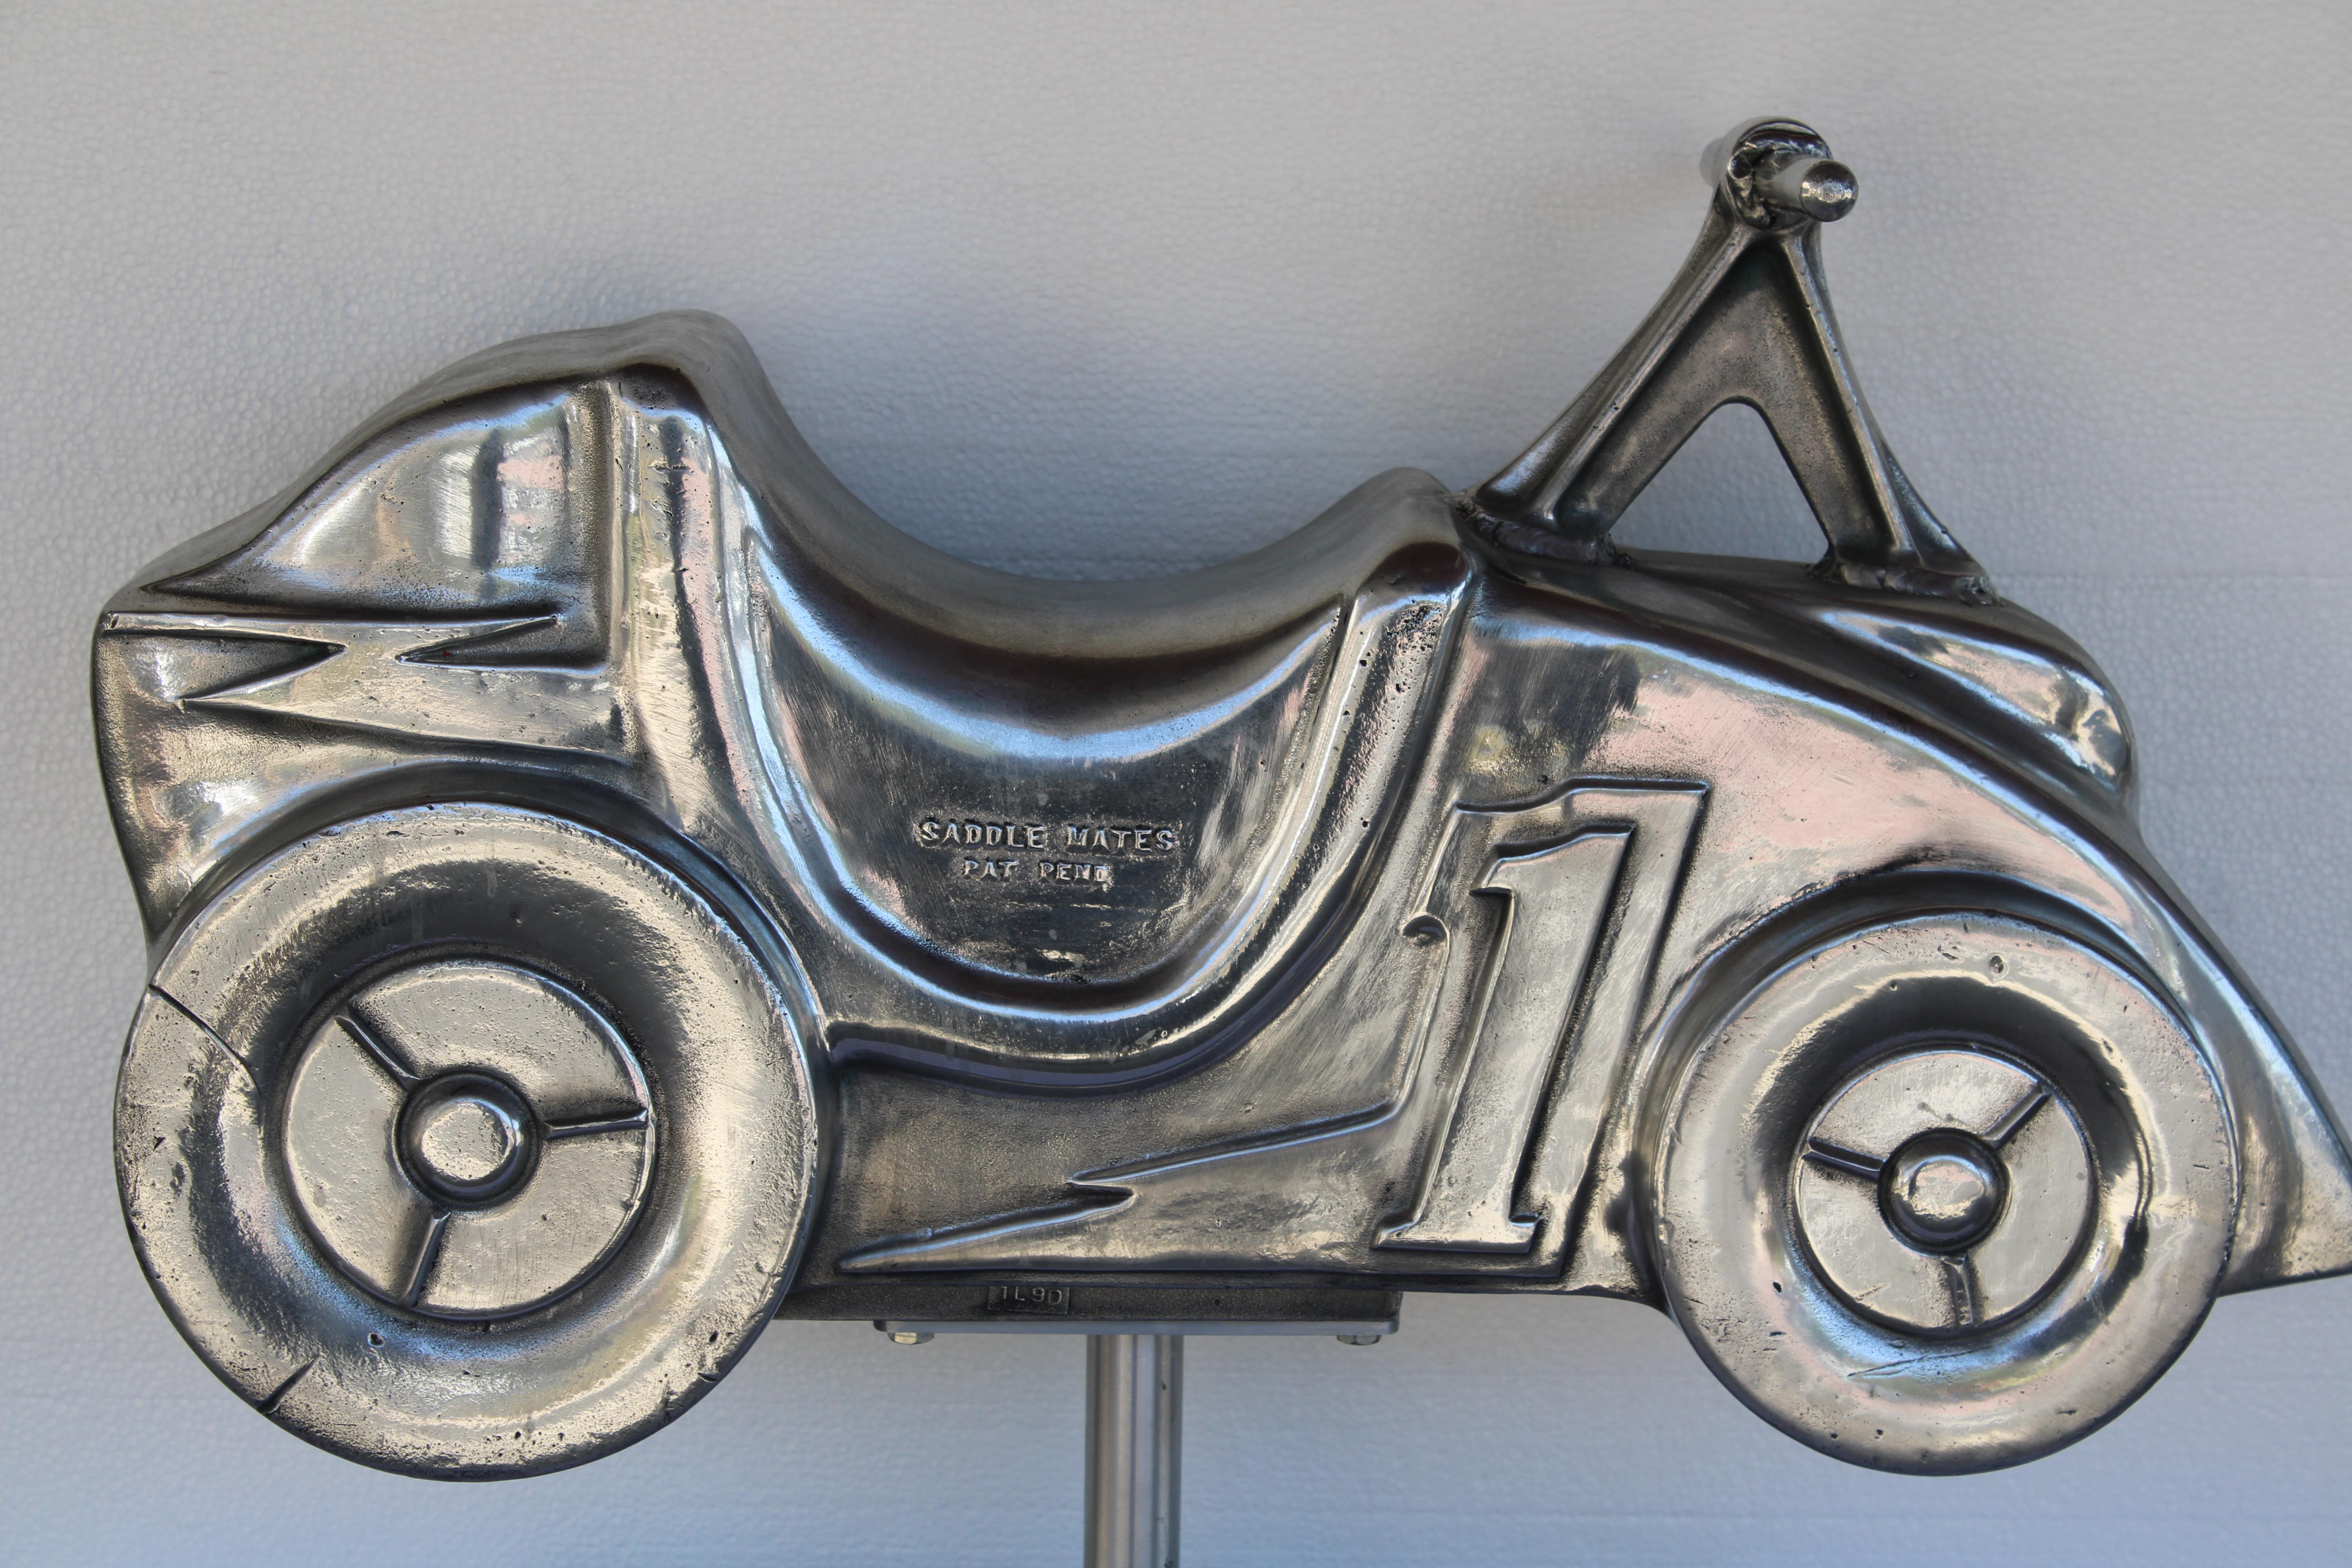 Cette sculpture de moto en aluminium était à l'origine un terrain de jeu à ressort situé dans les parcs. Le ressort n'est pas inclus. La moto a été polie et placée sur un support en aluminium.  Il s'agit plutôt d'une sculpture qui fait partie de